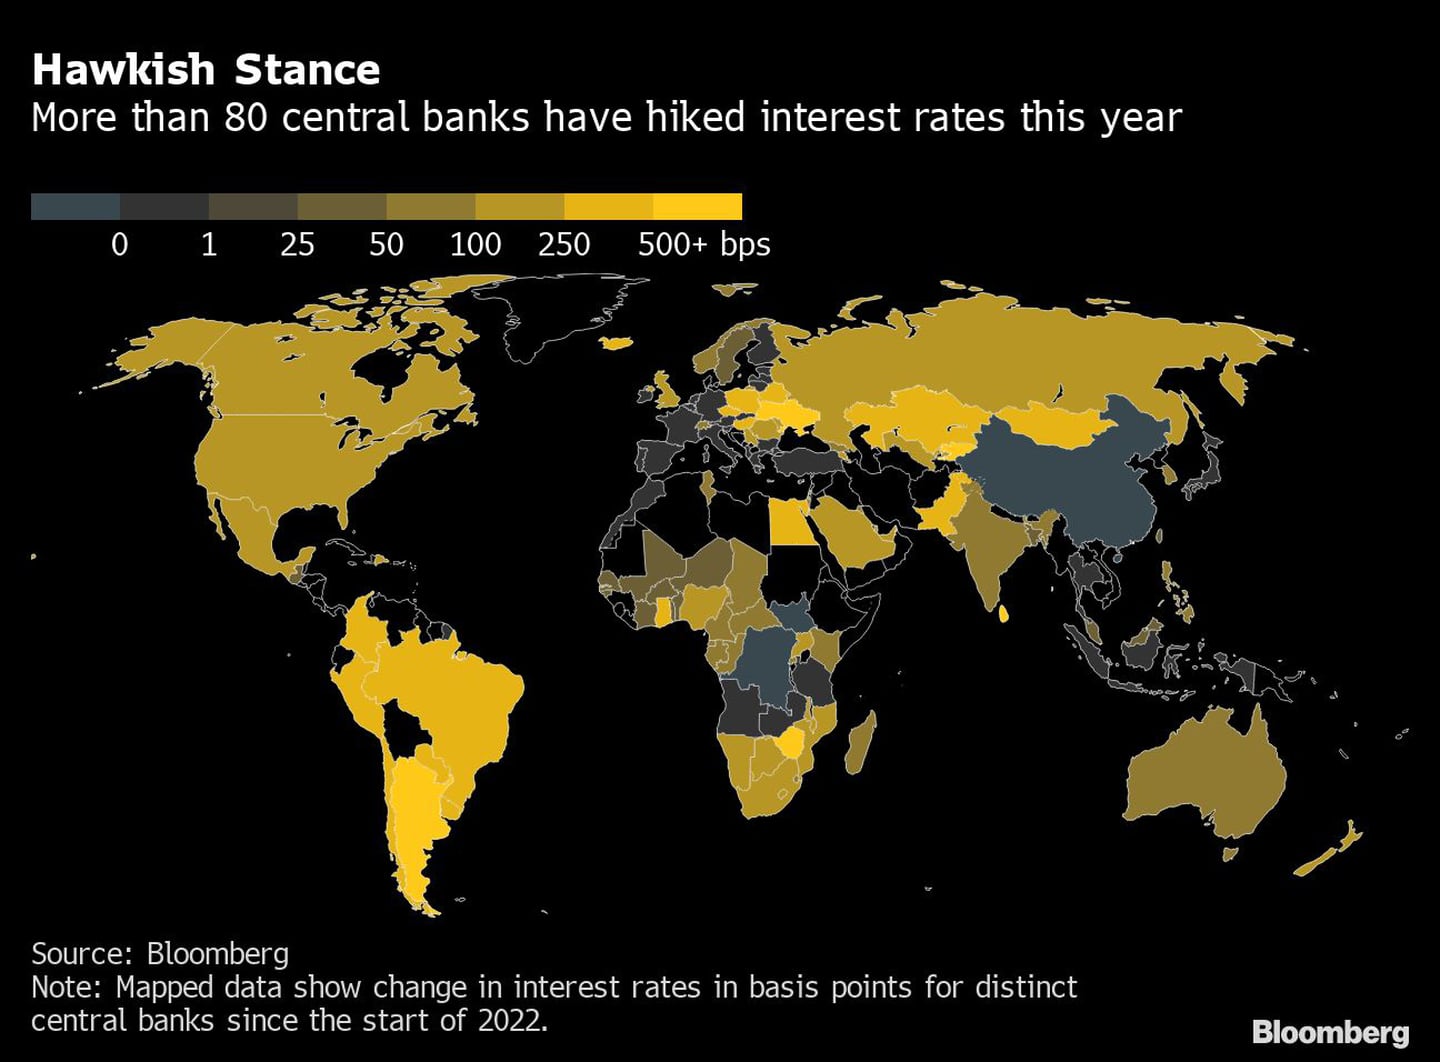 Postura “Hawkish”
Más de 80 bancos centrales han subido las tasas de interés este año
Hawkish: partidario de política monetaria restrictivadfd